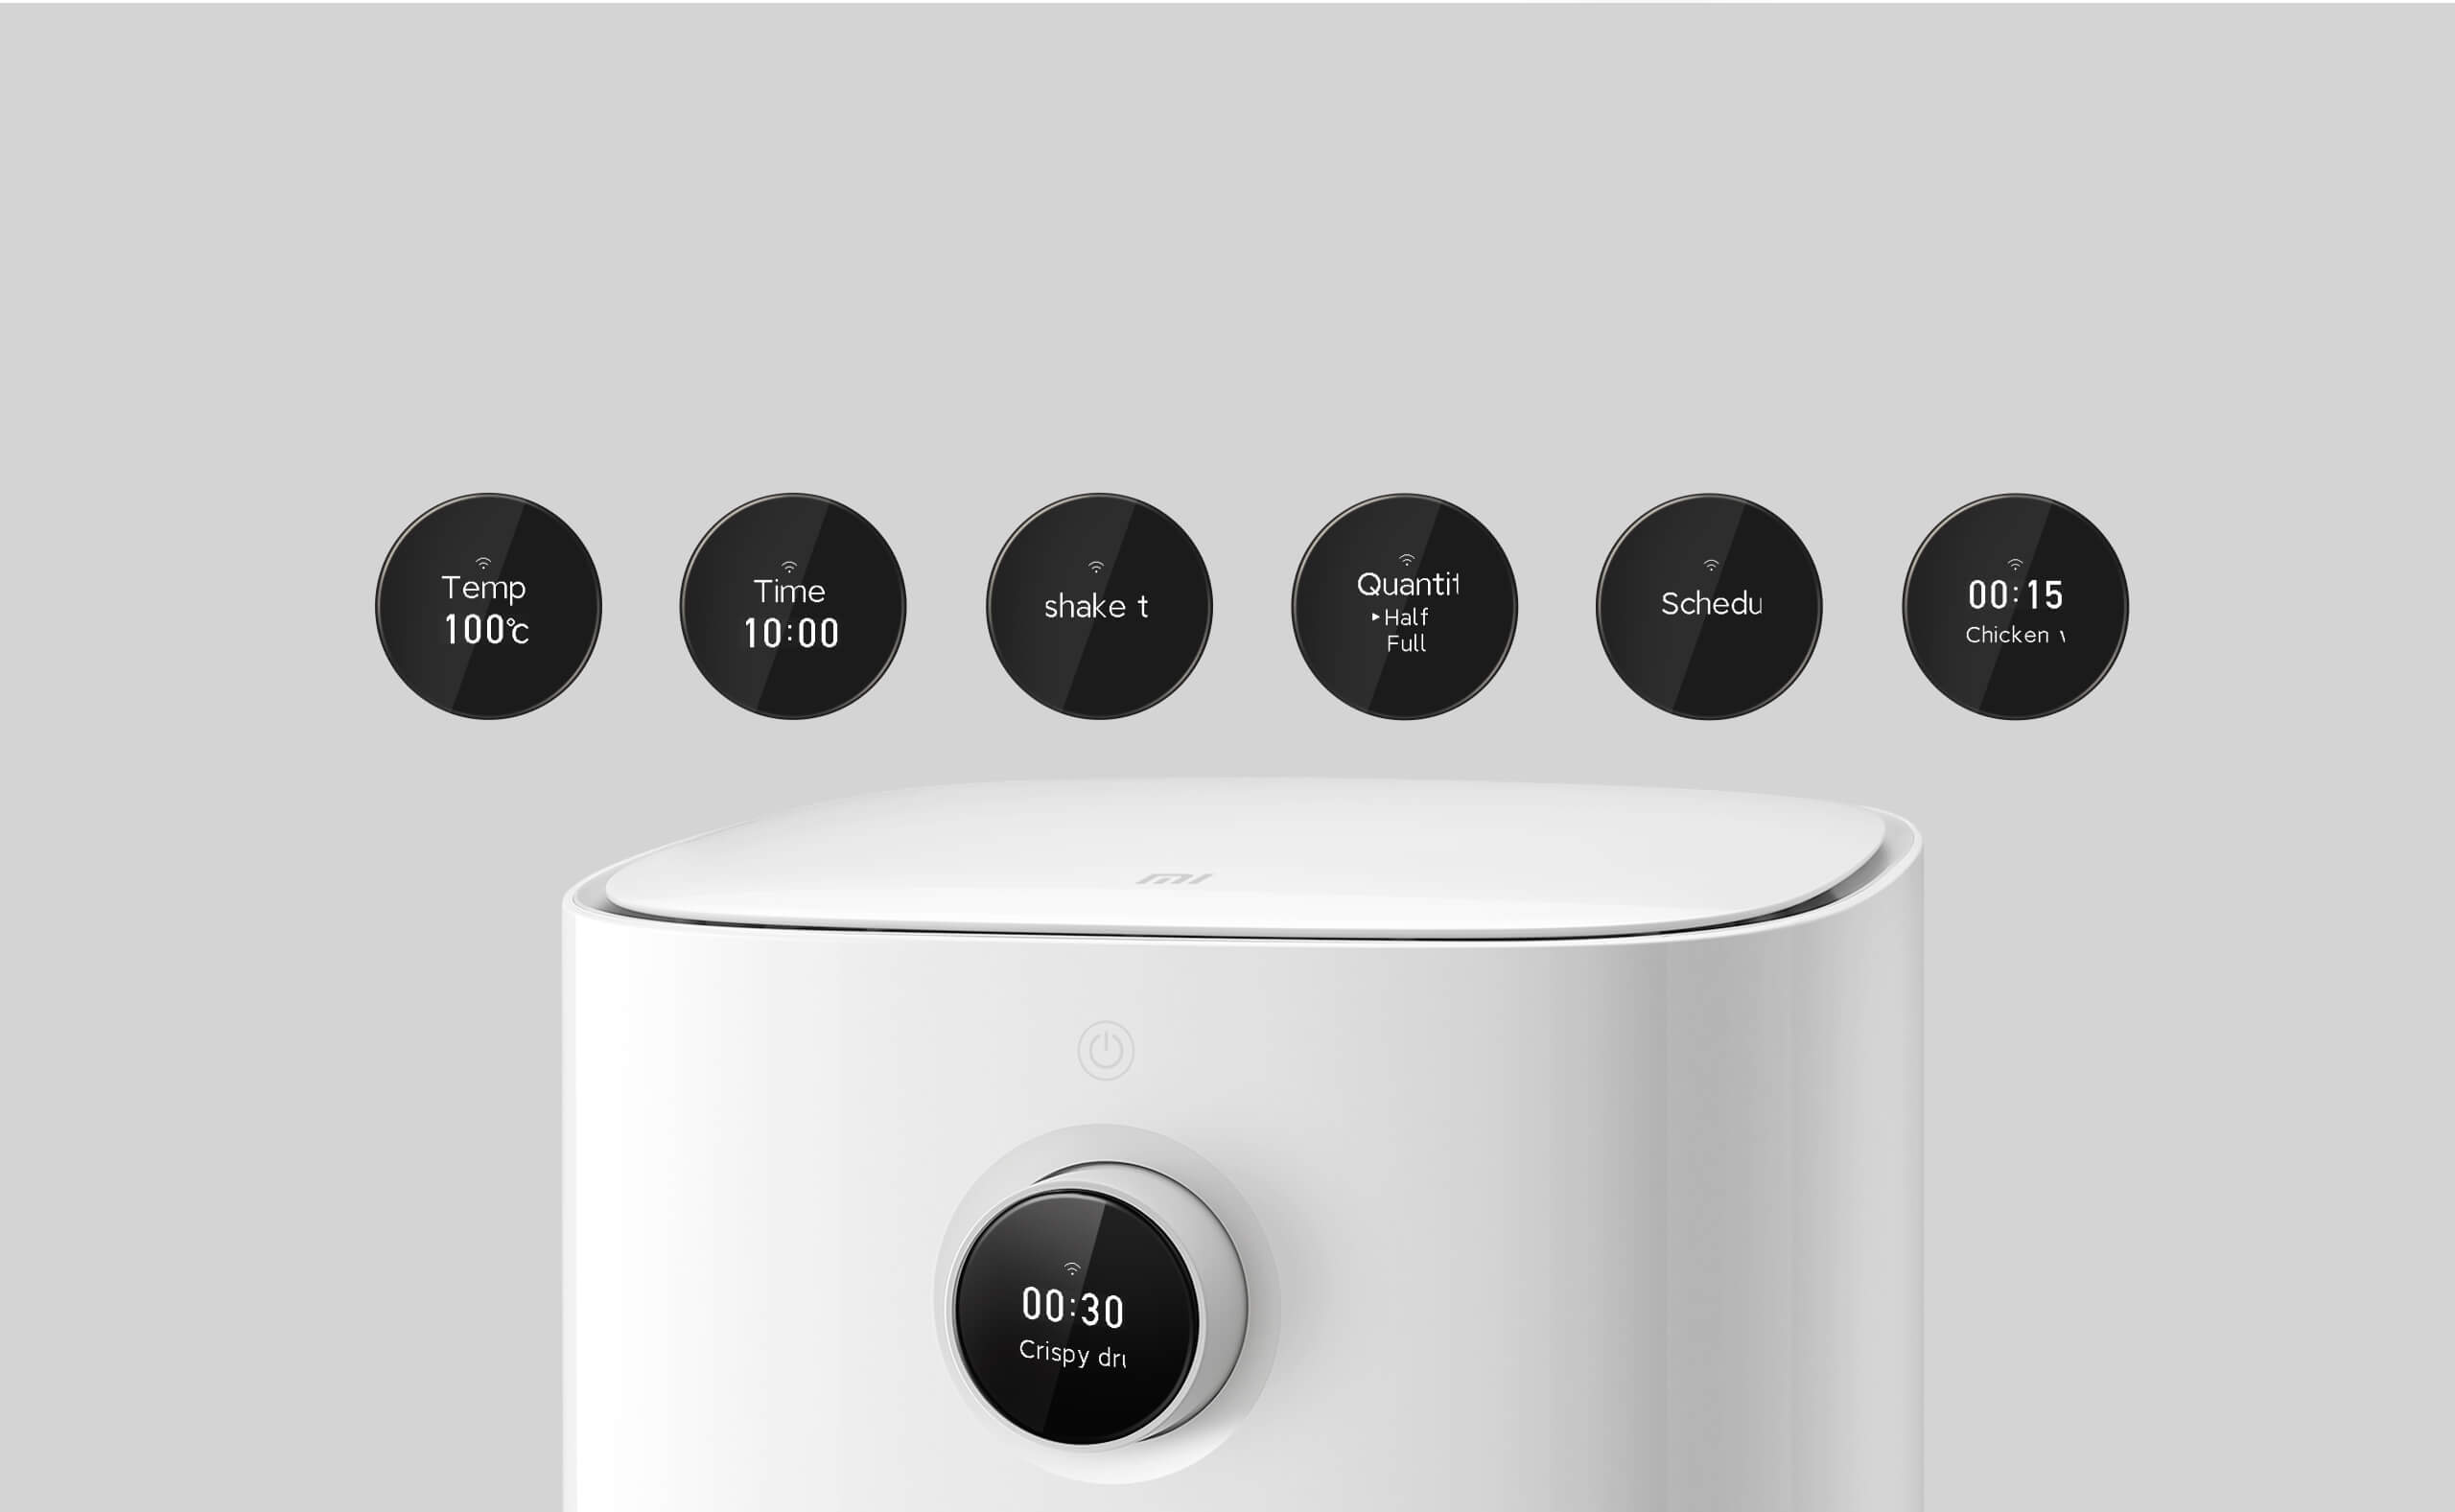 Xiaomi Mi Smart Air Fryer 1500W - Freidora de aire